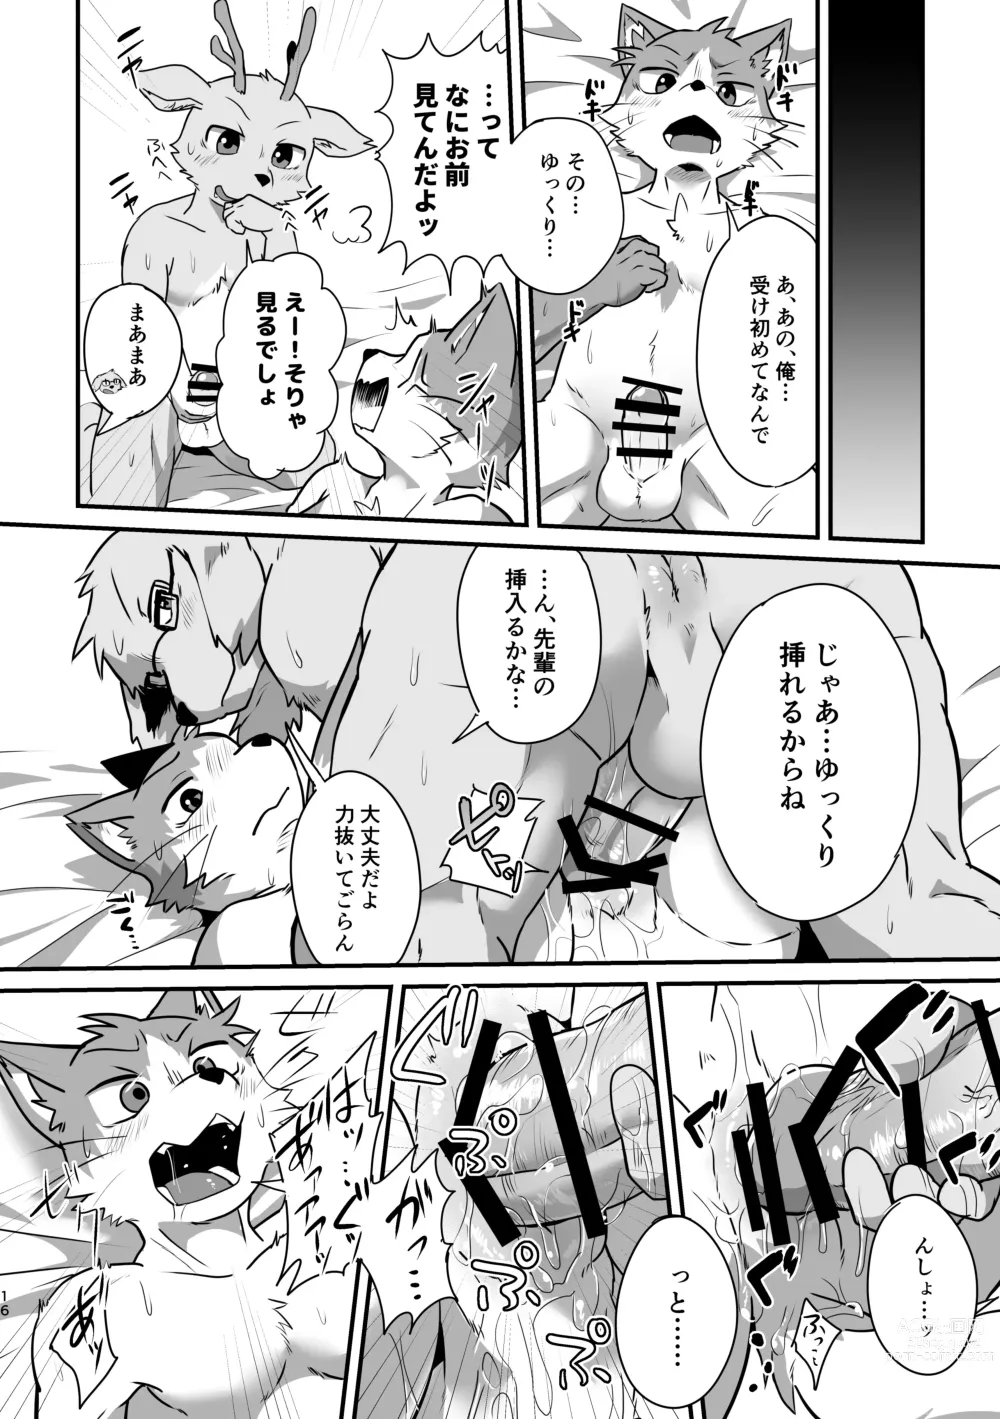 Page 15 of doujinshi Boku-Tachi Futari wa Neko shitai!